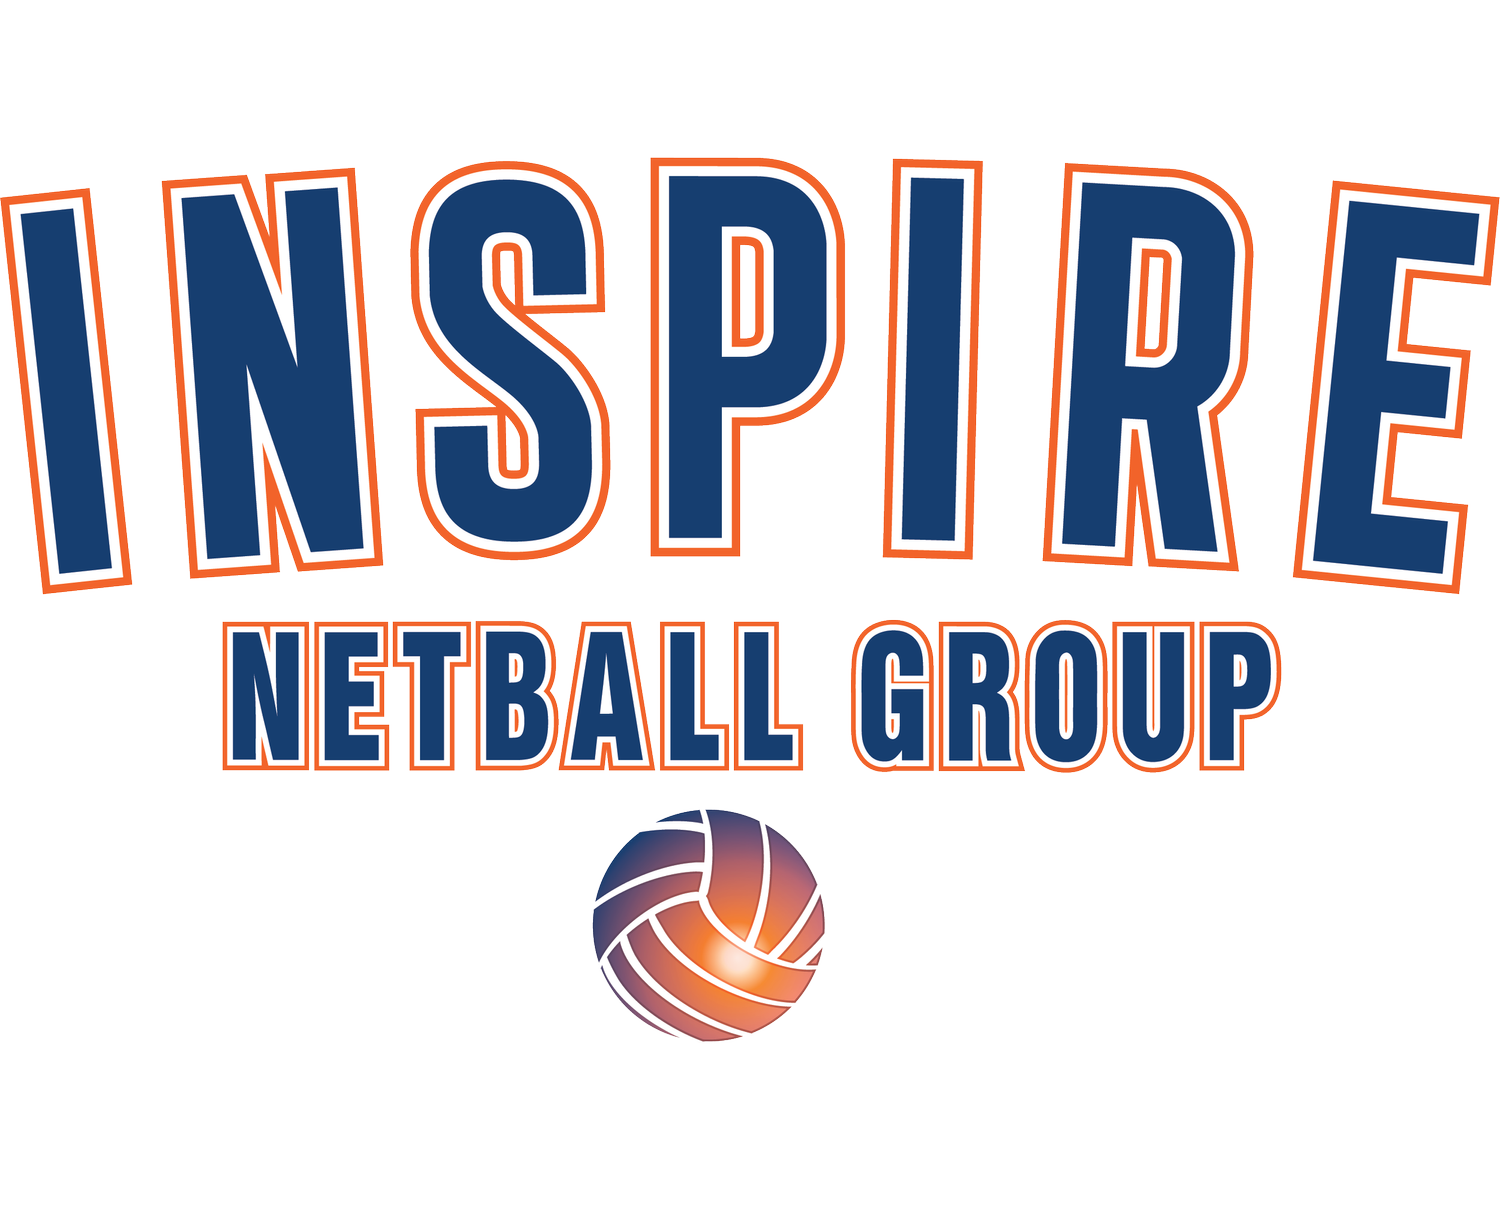 Inspire Netball Group - New